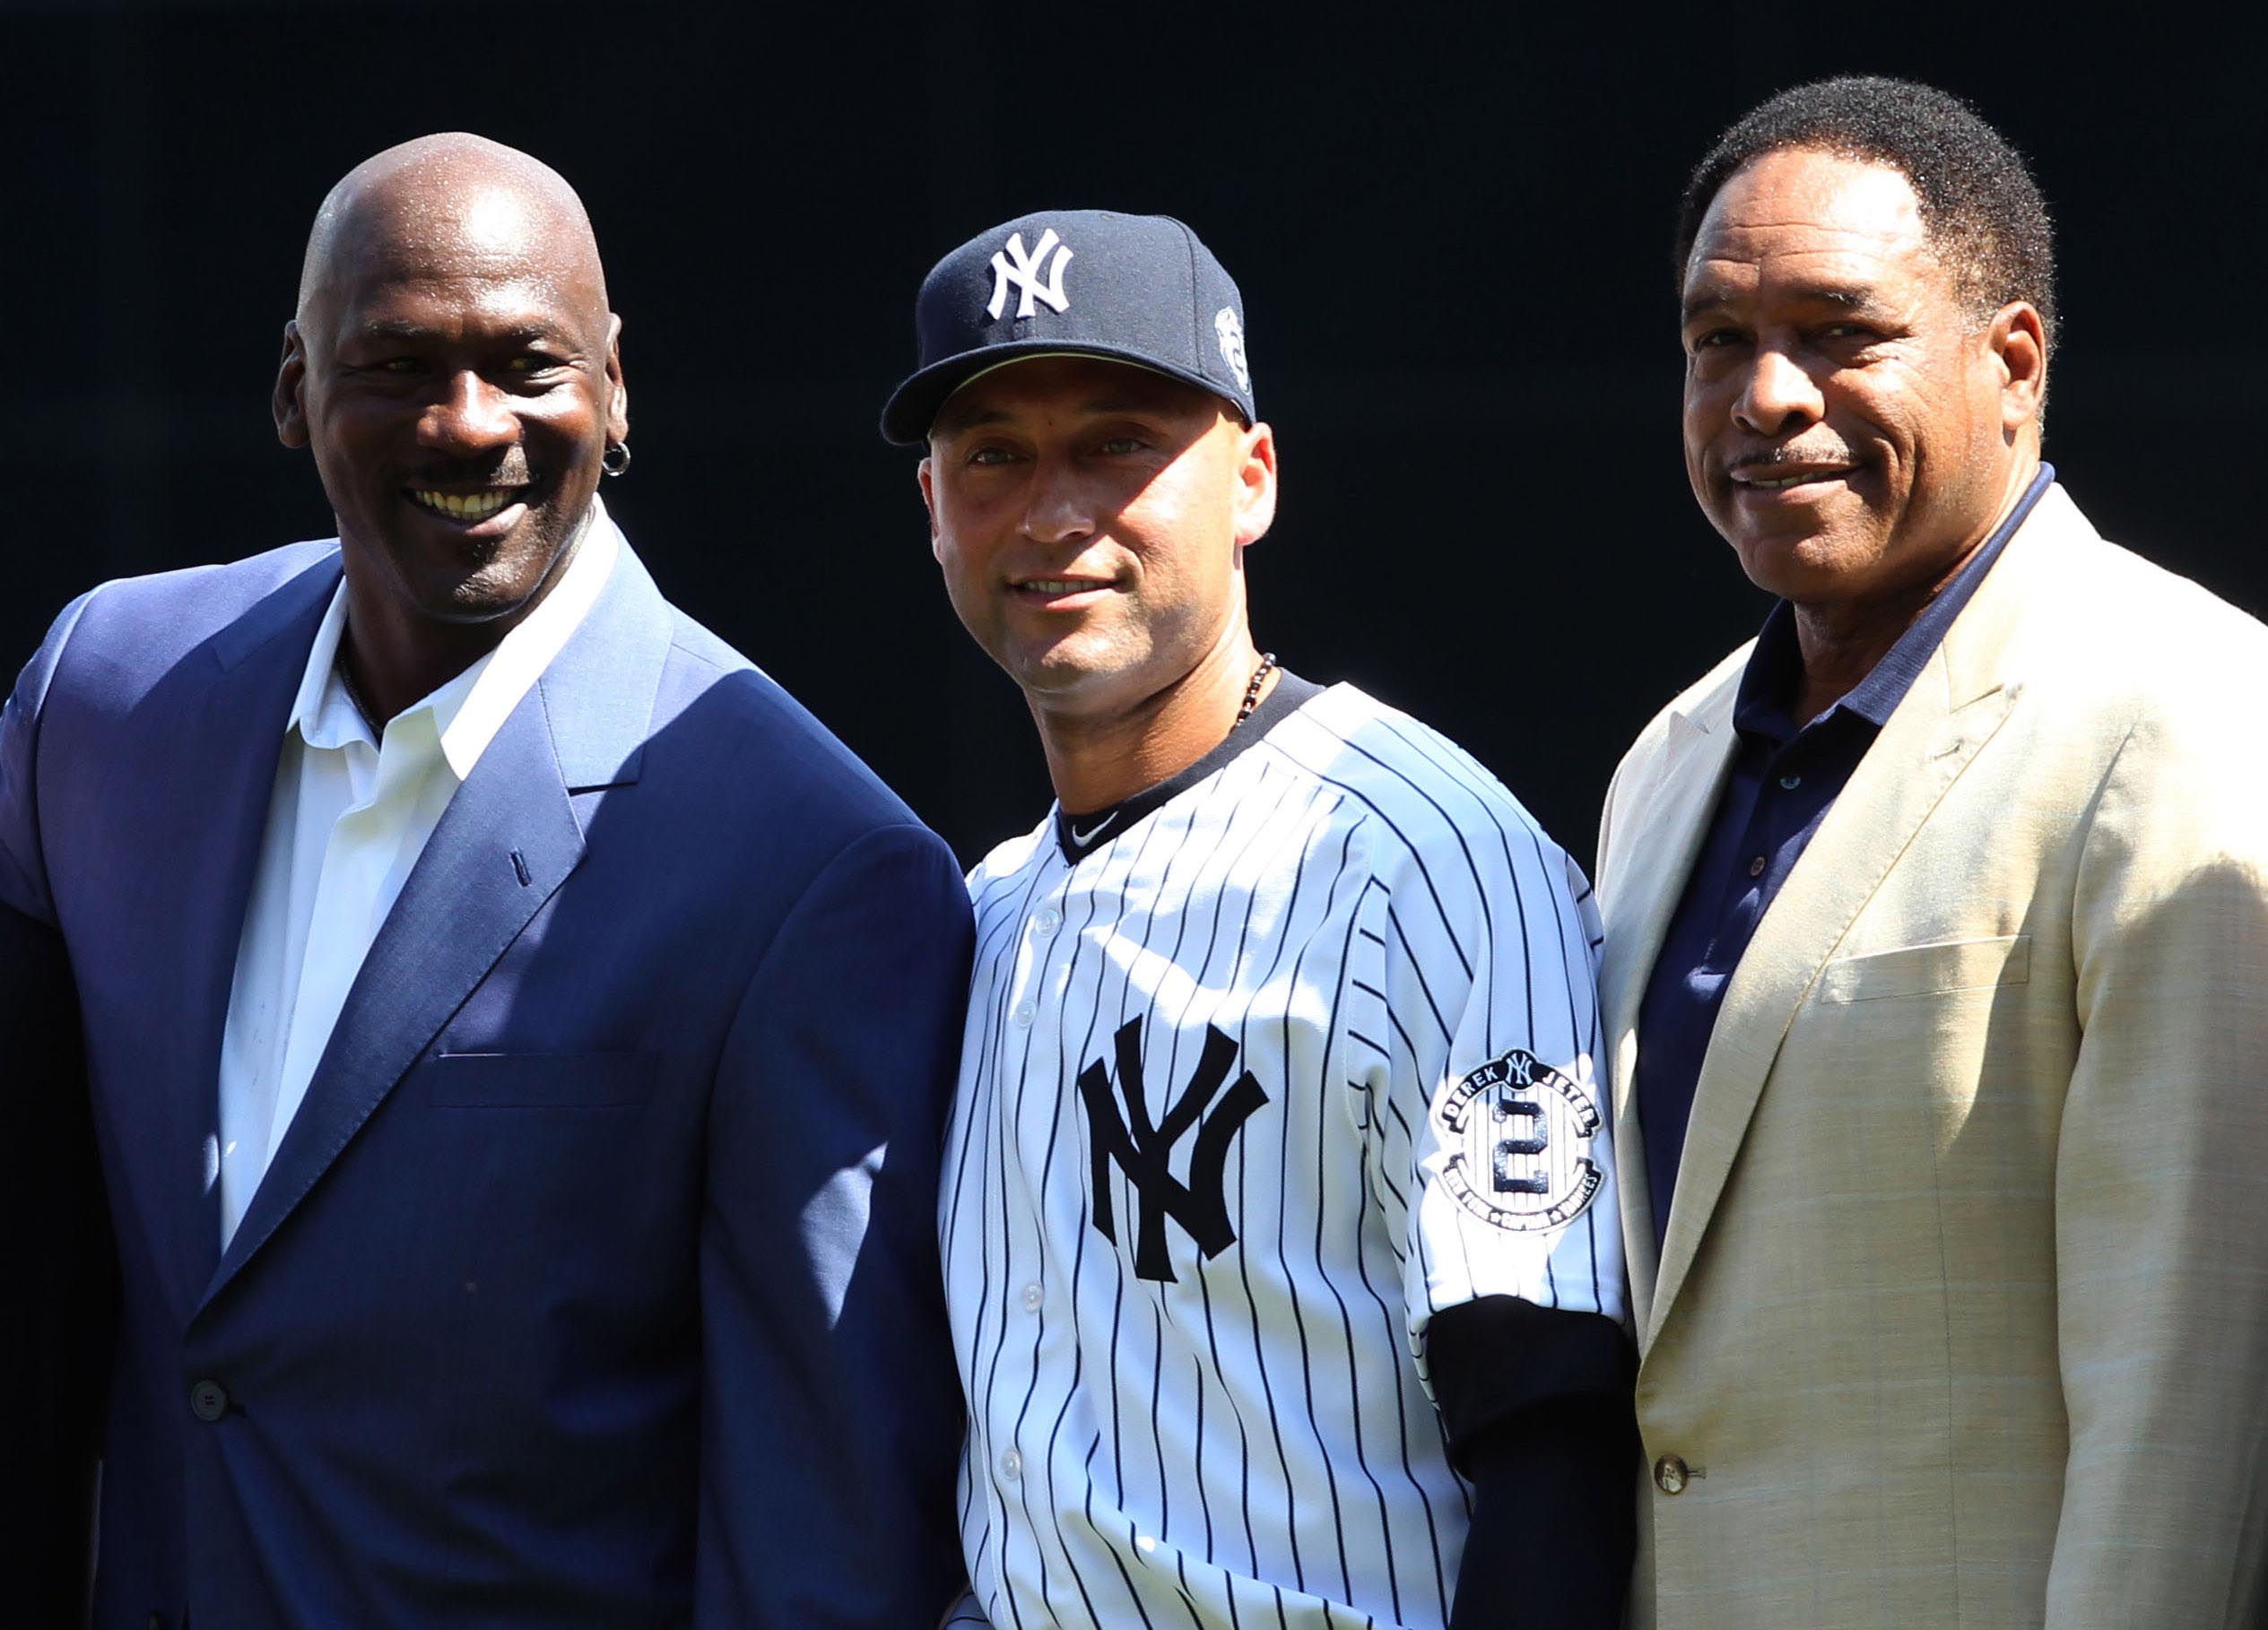 Michael Jordan surprises Derek Jeter on Derek Jeter Day at Yankee Stadium